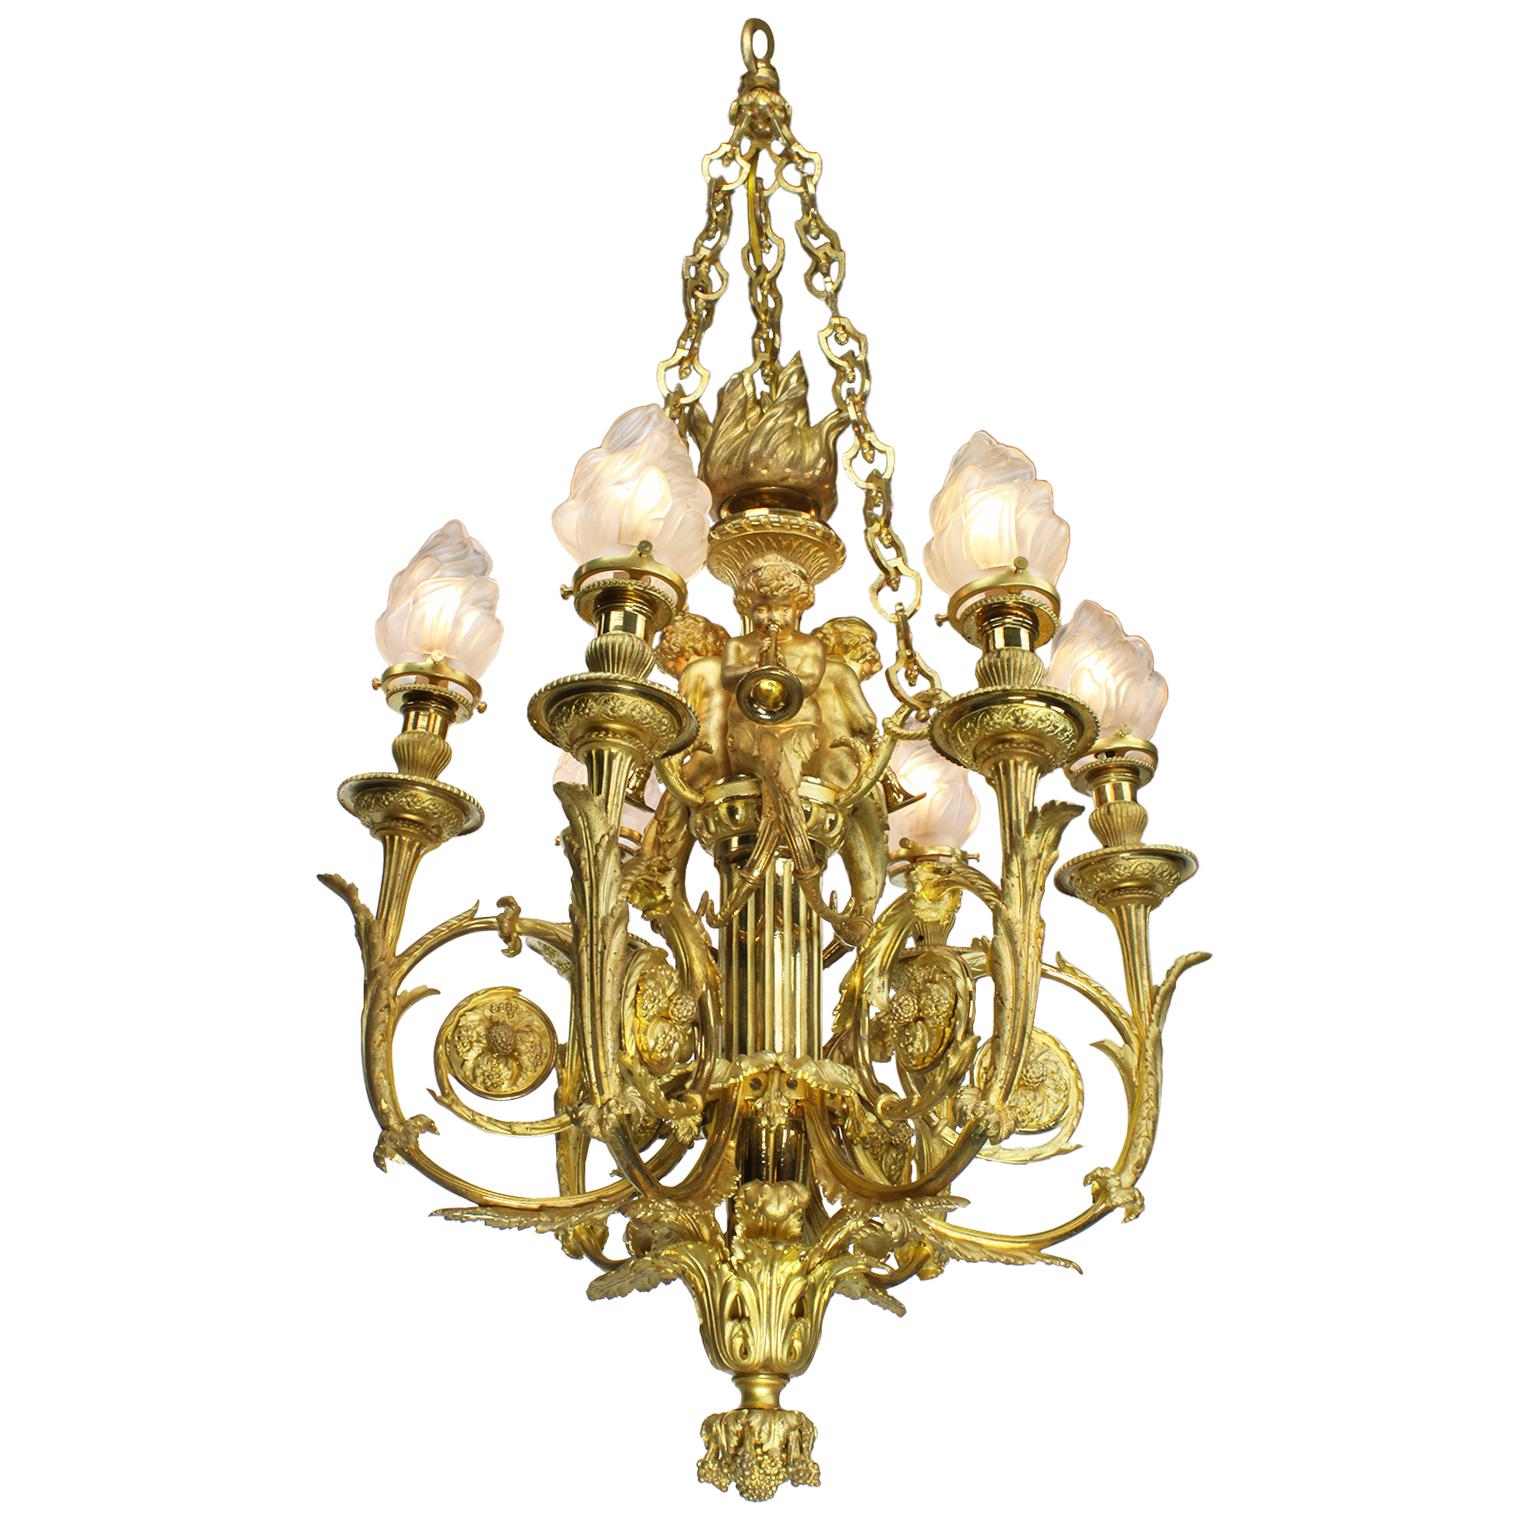 Superbe lustre de style Louis XVI de qualité française, datant du 19e siècle, en bronze doré, à six lumières, avec des figures d'angelots, d'après le modèle de Pierre Gouthiere dans le cabinet dore' pour Marie-Antoinette au palais royal de